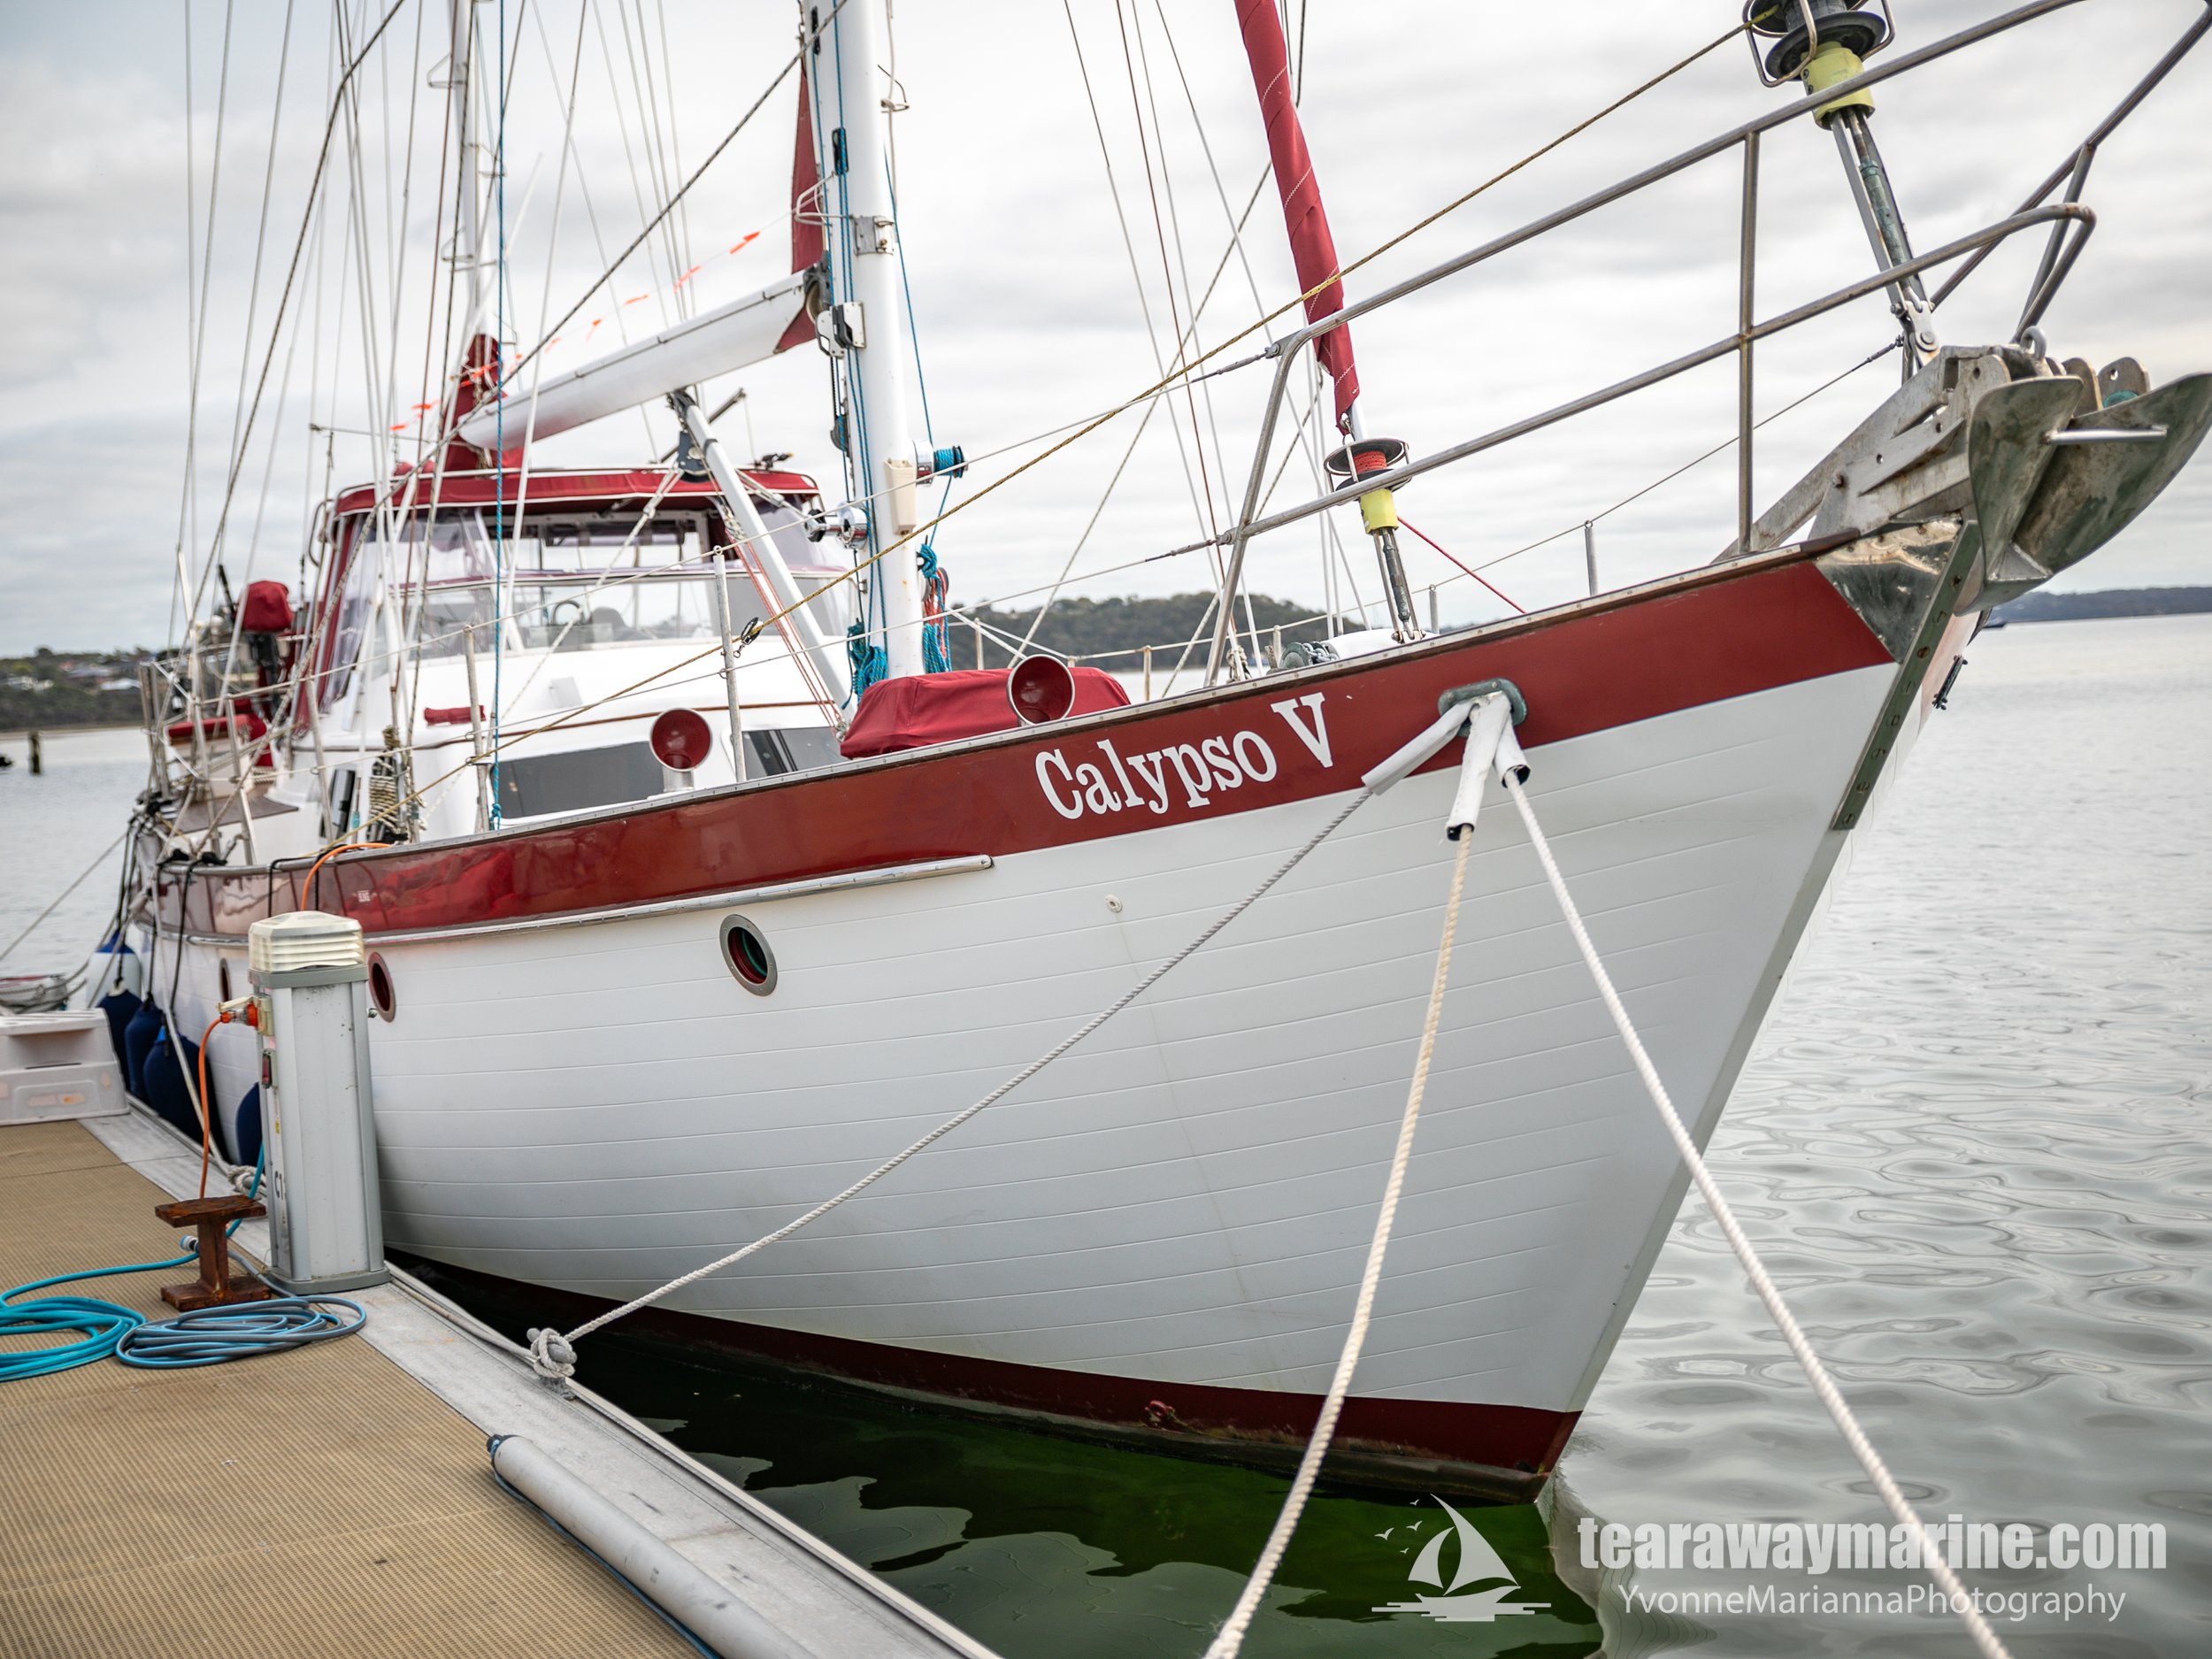 Calypso Yacht Tearaway Marine - Yvonne Marianna Photography-18.jpg